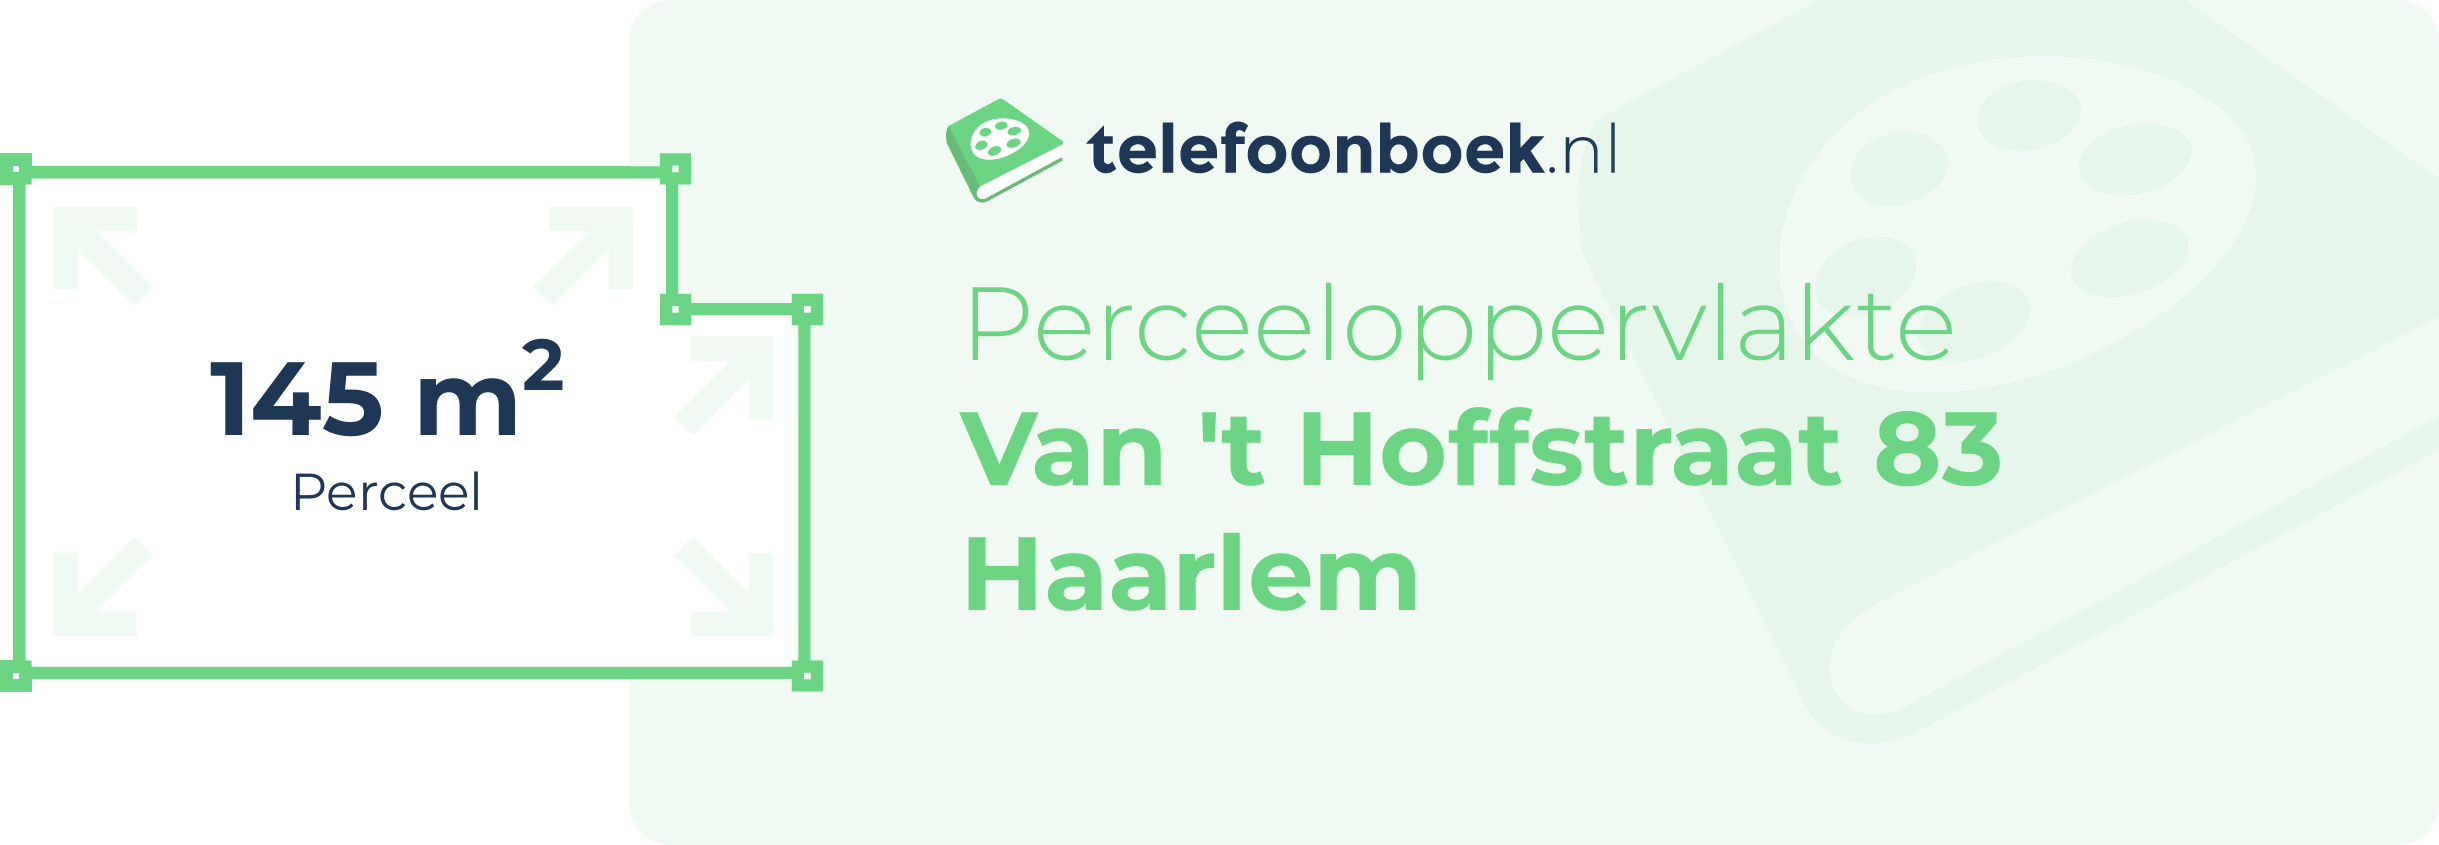 Perceeloppervlakte Van 't Hoffstraat 83 Haarlem